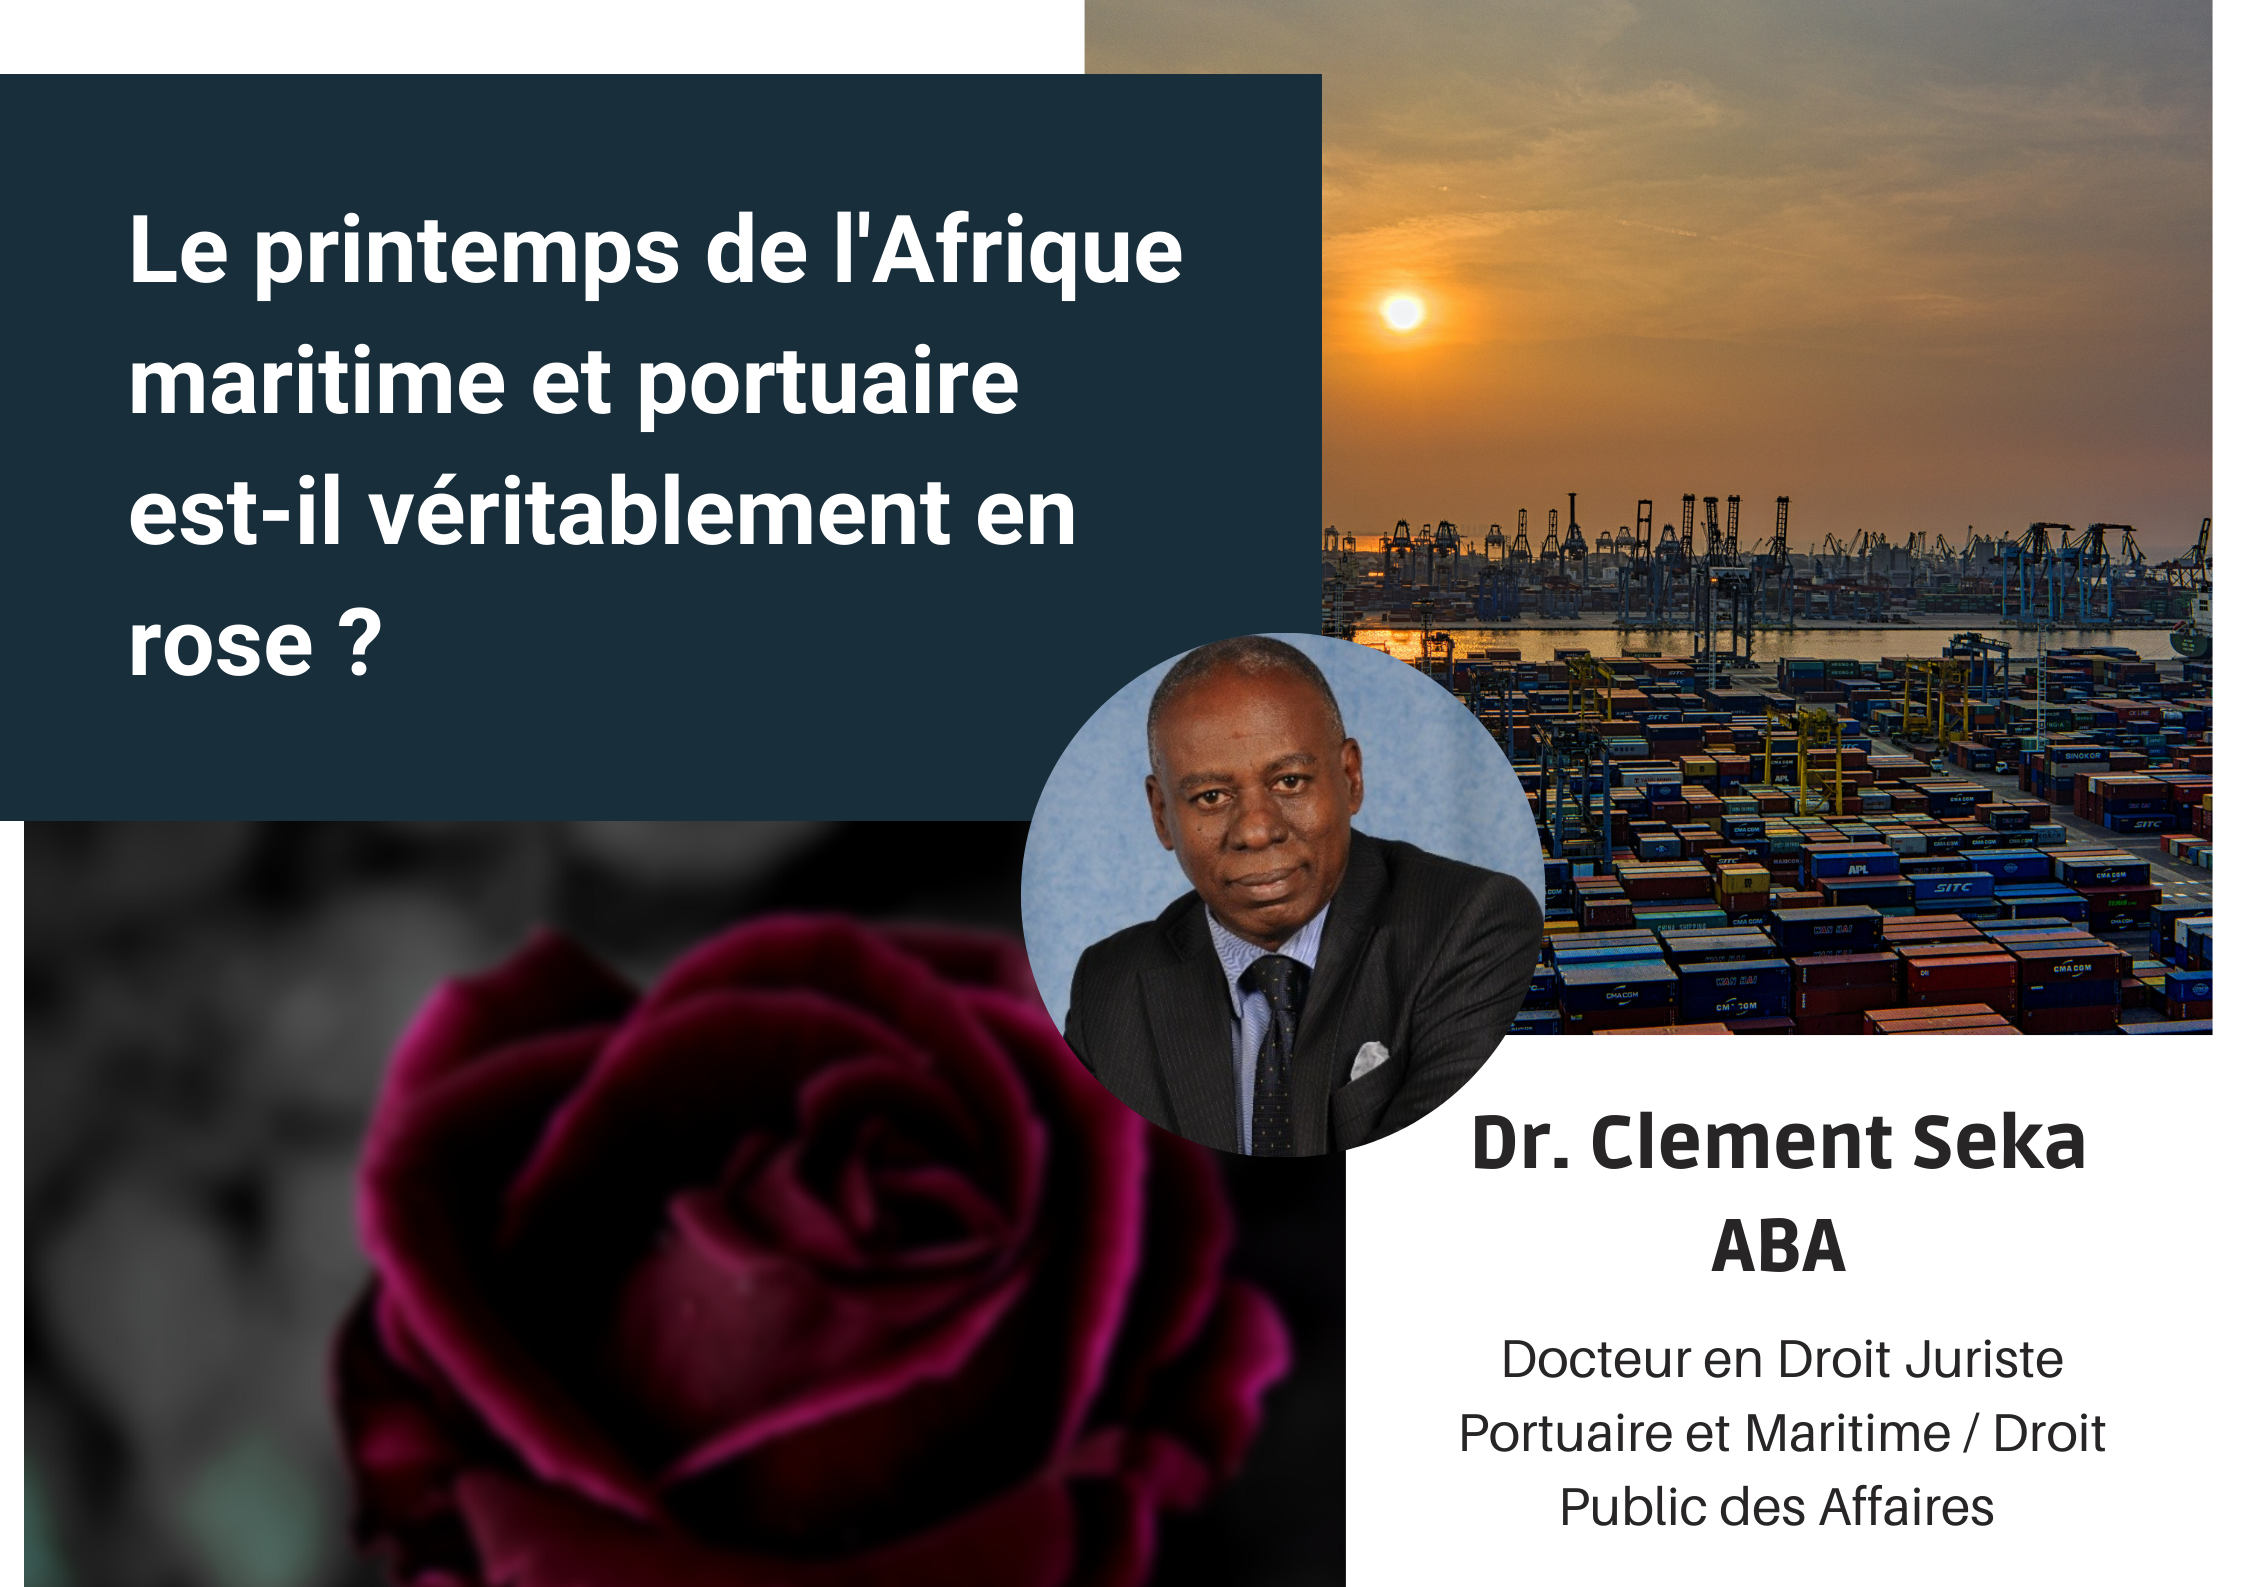 Le printemps de l’Afrique maritime et portuaire est-il véritablement en rose ?